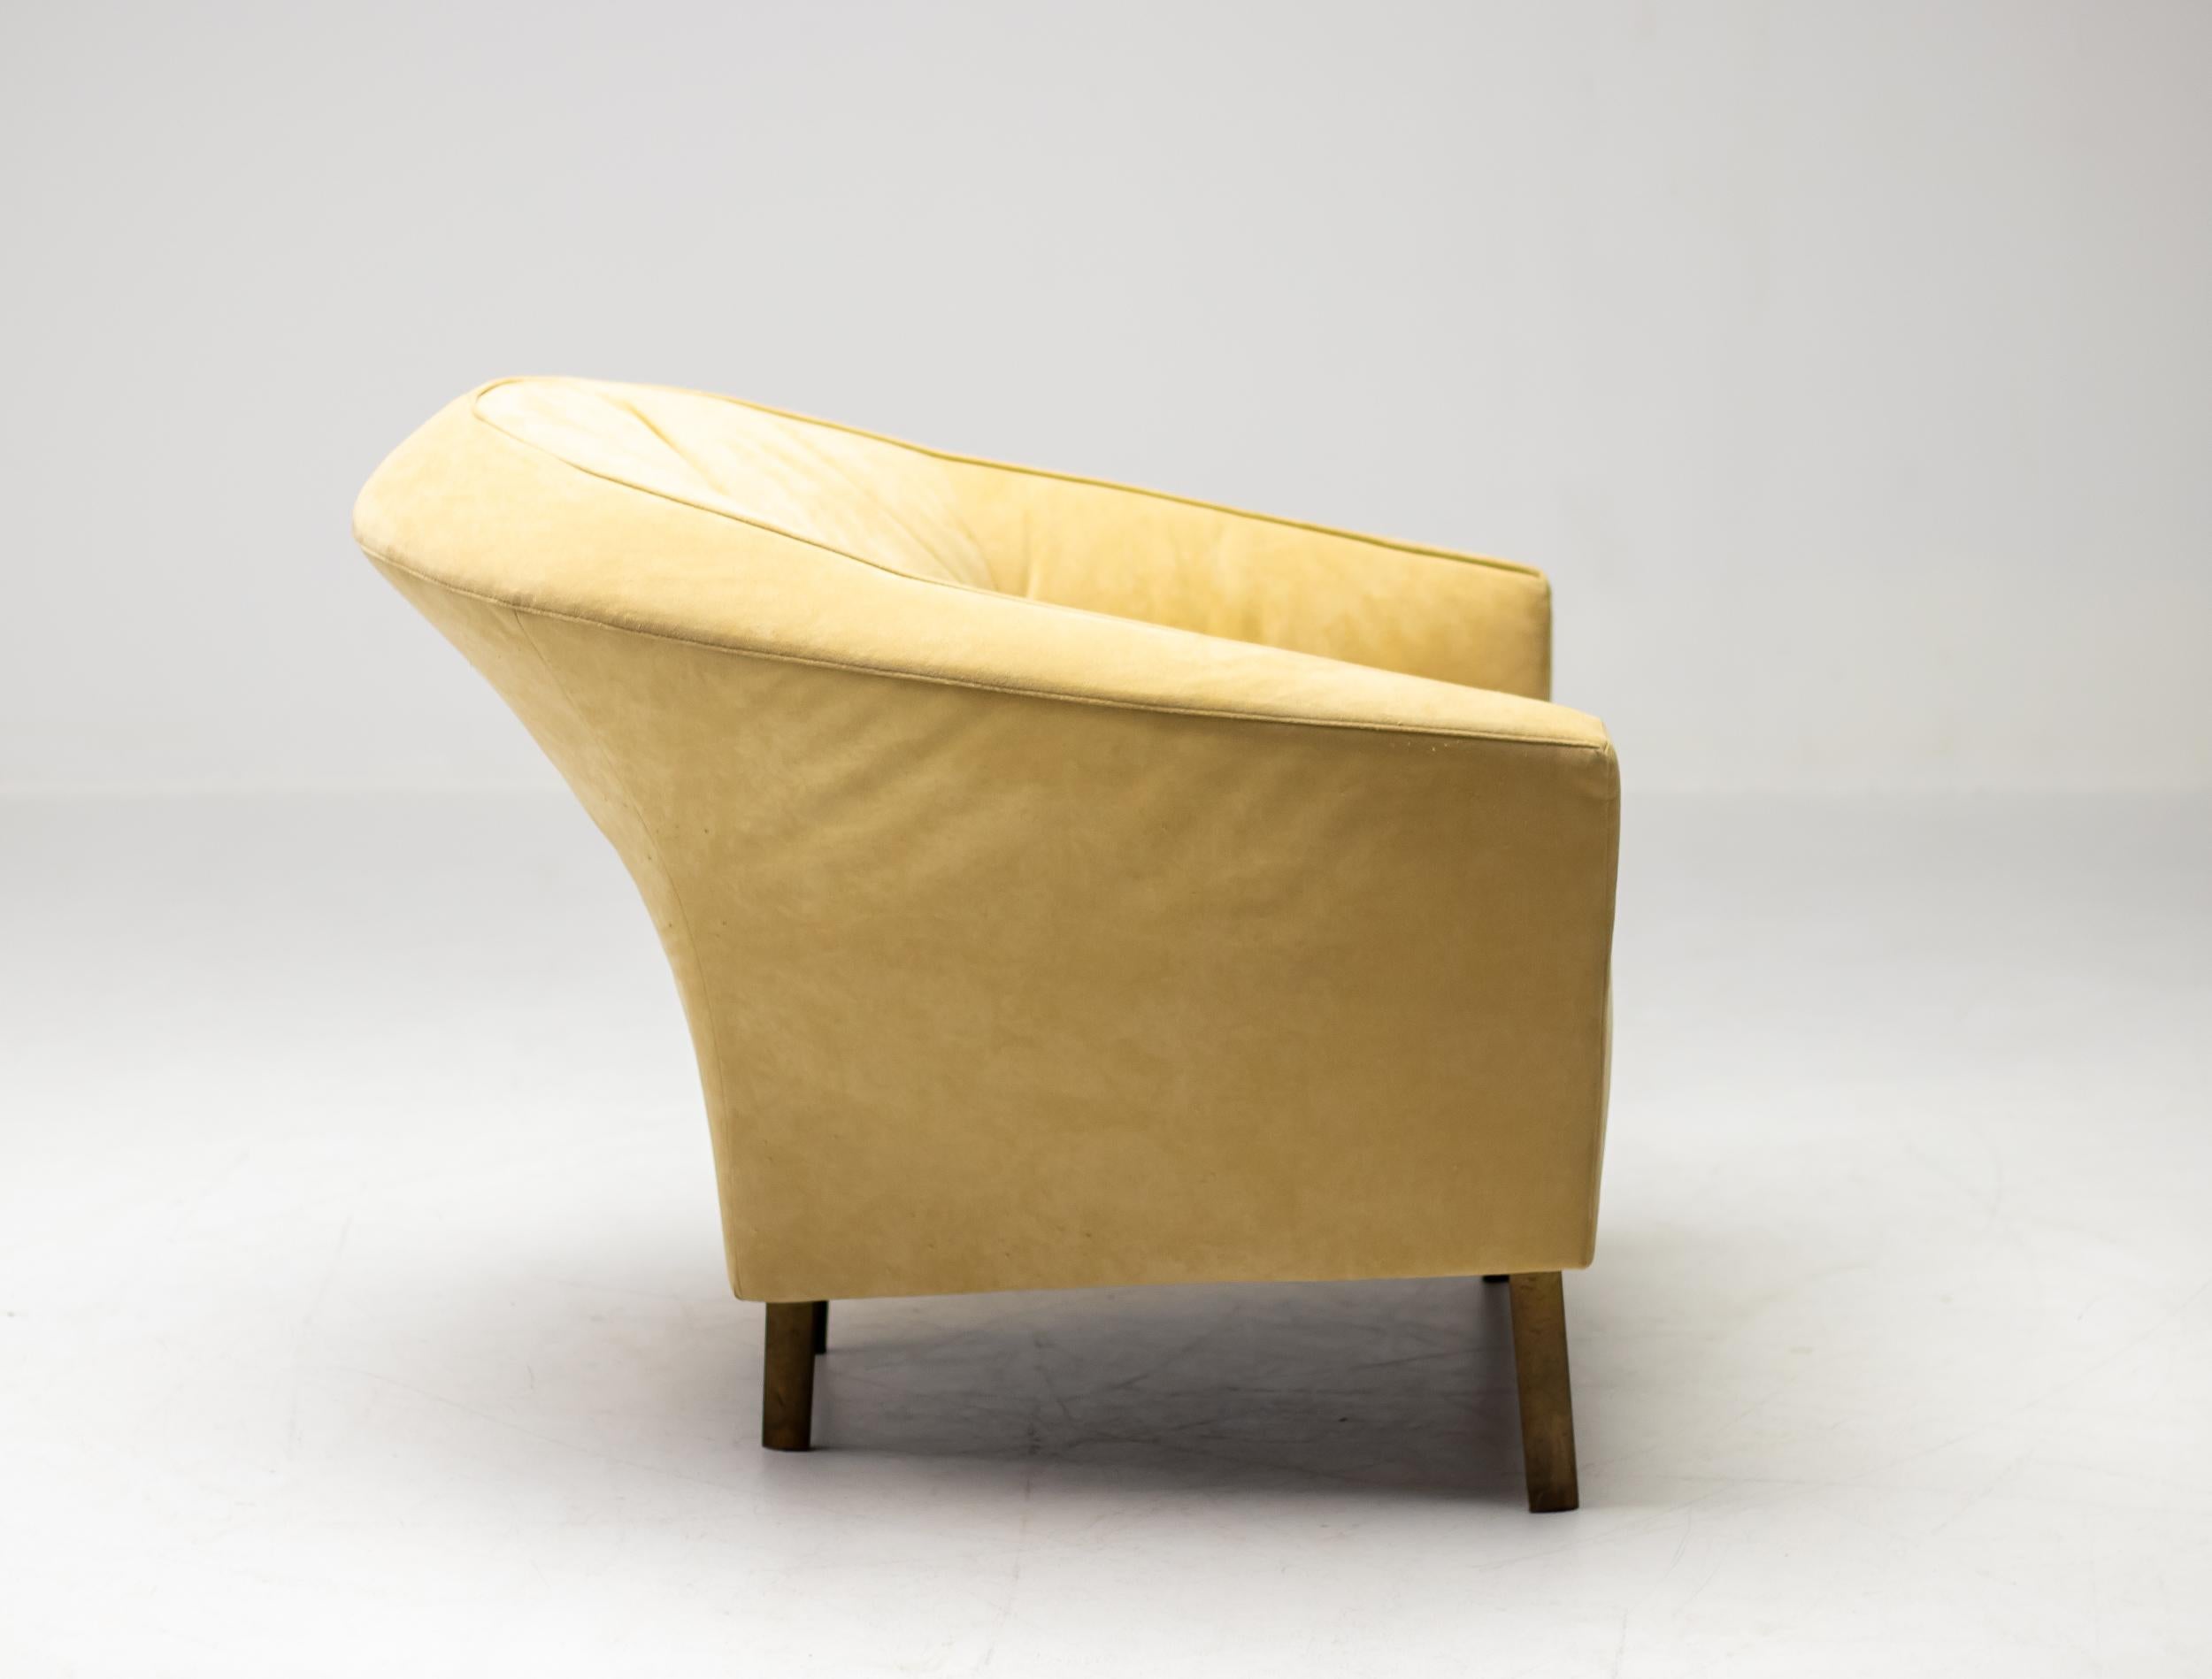 Sehr eleganter, geschwungener Sessel von Ligne Roset mit Beinen aus Bronzeguss in gelbem Alcantara.
Einige Abnutzungserscheinungen am Alcantara, aber sehr gut gepflegt und frei von Flecken.
Sehr seltenes Stück, gekennzeichnet mit dem Label Ligne